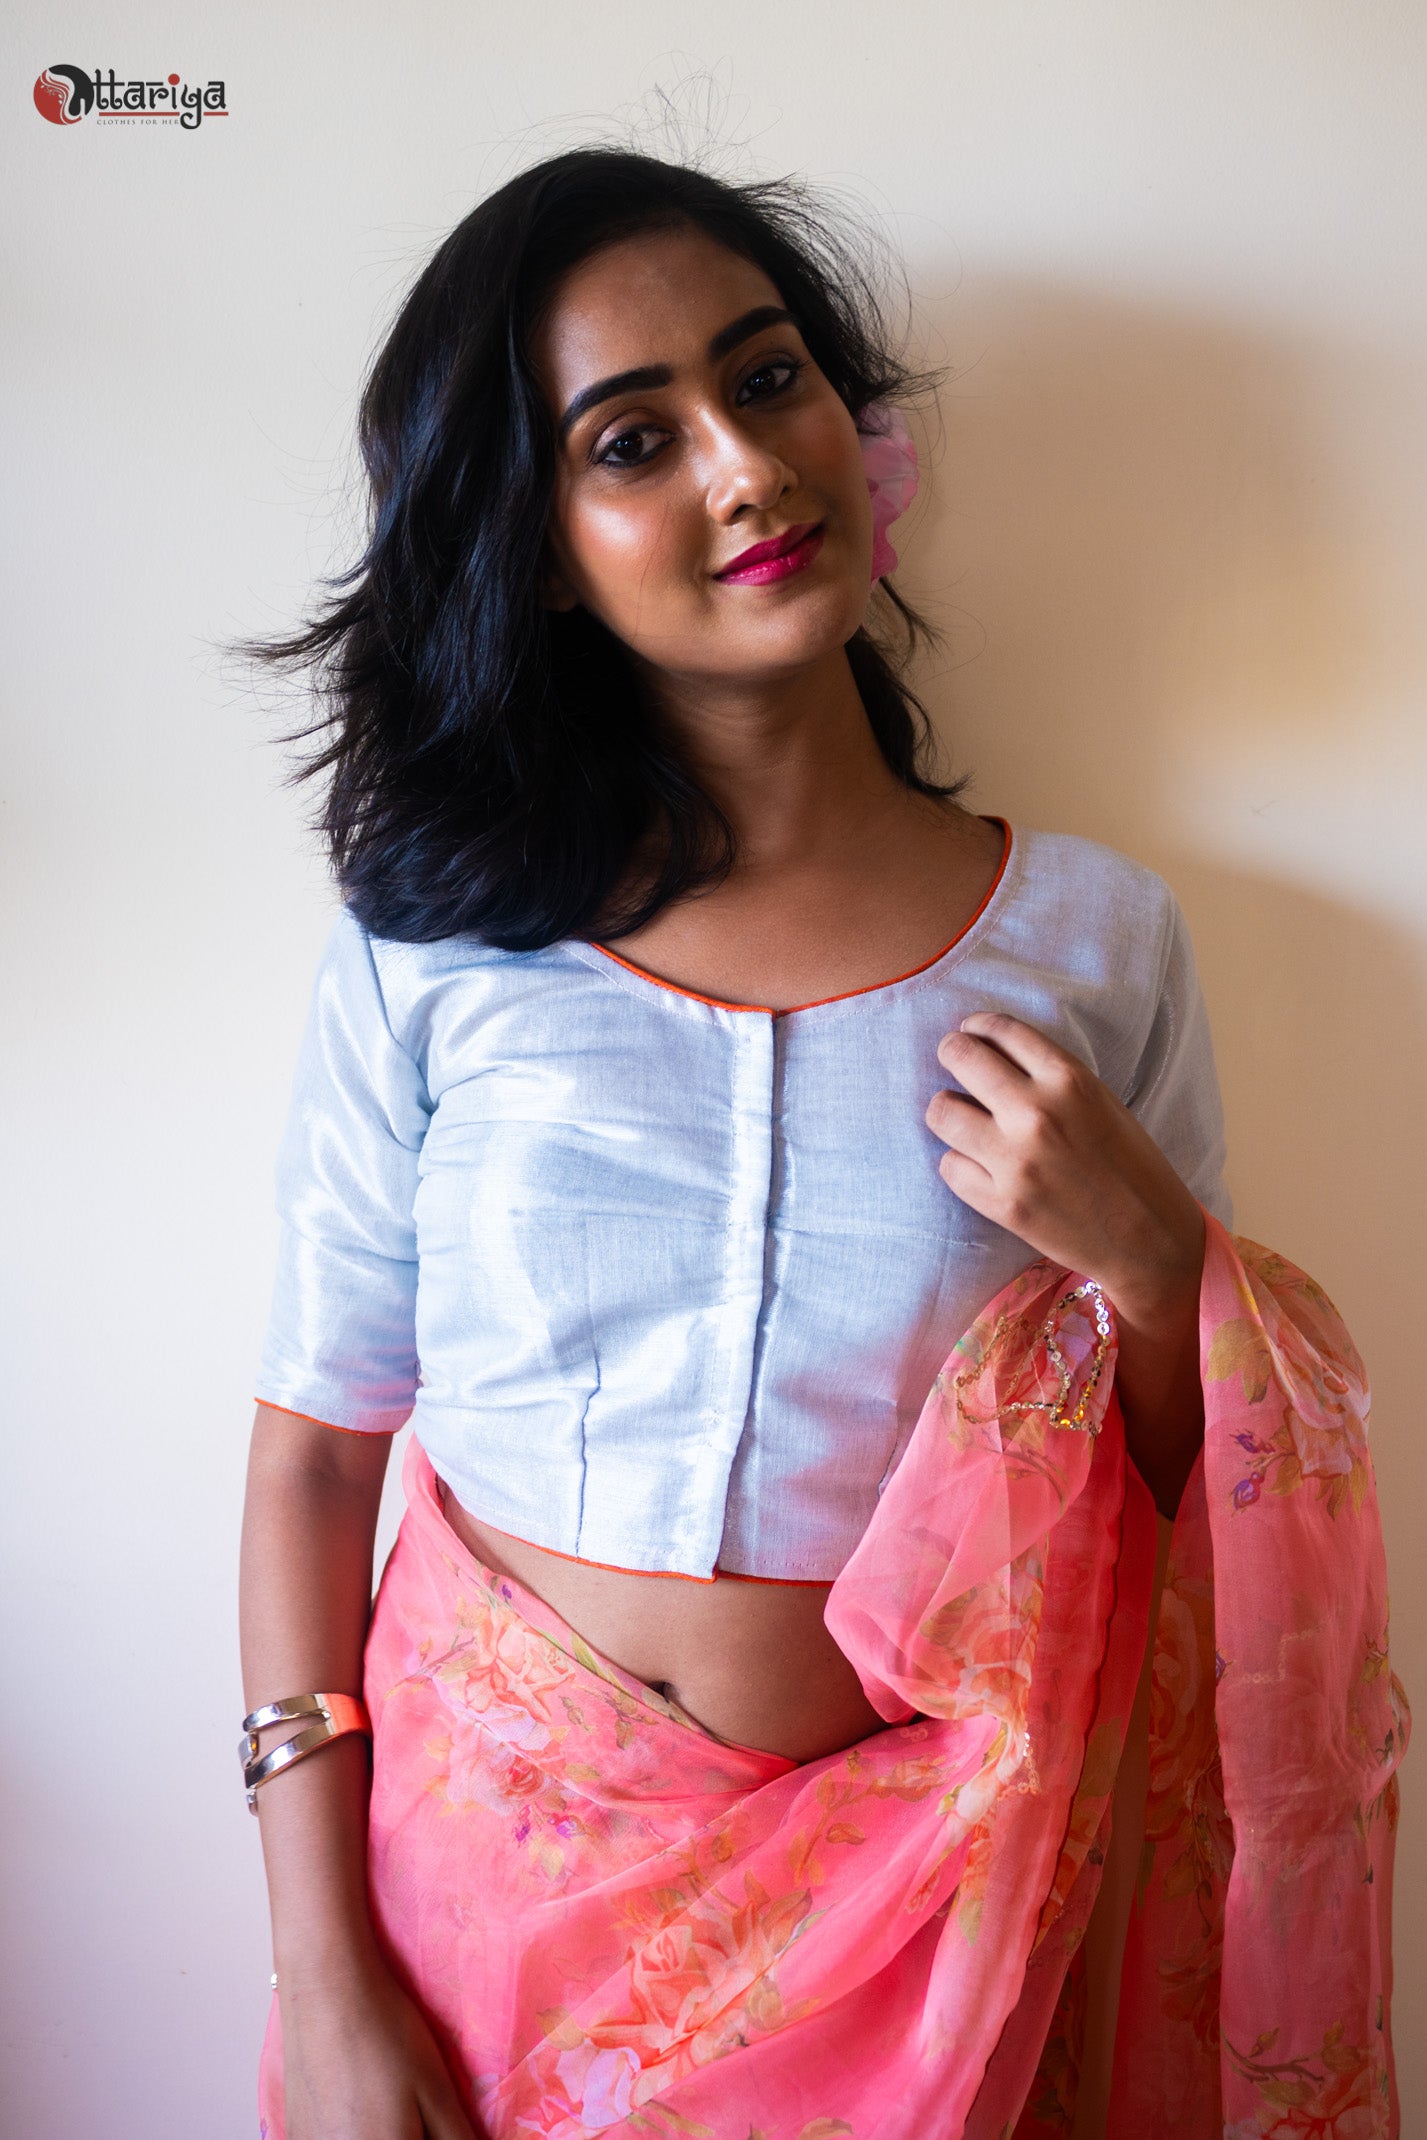 Silver Durga blouse